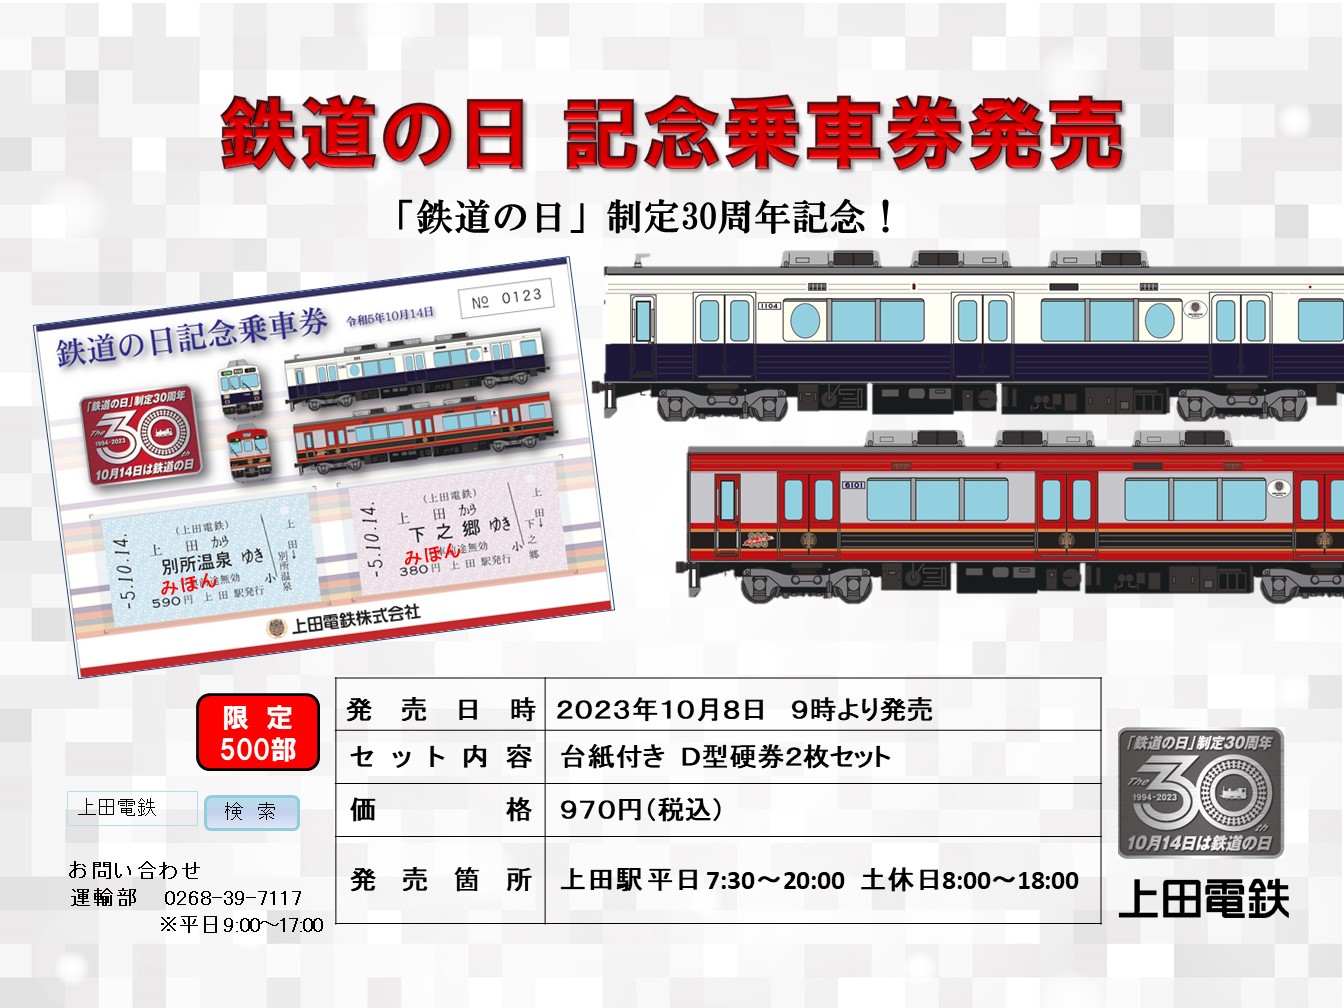 鉄道の日 記念乗車券発売 - 上田電鉄株式会社